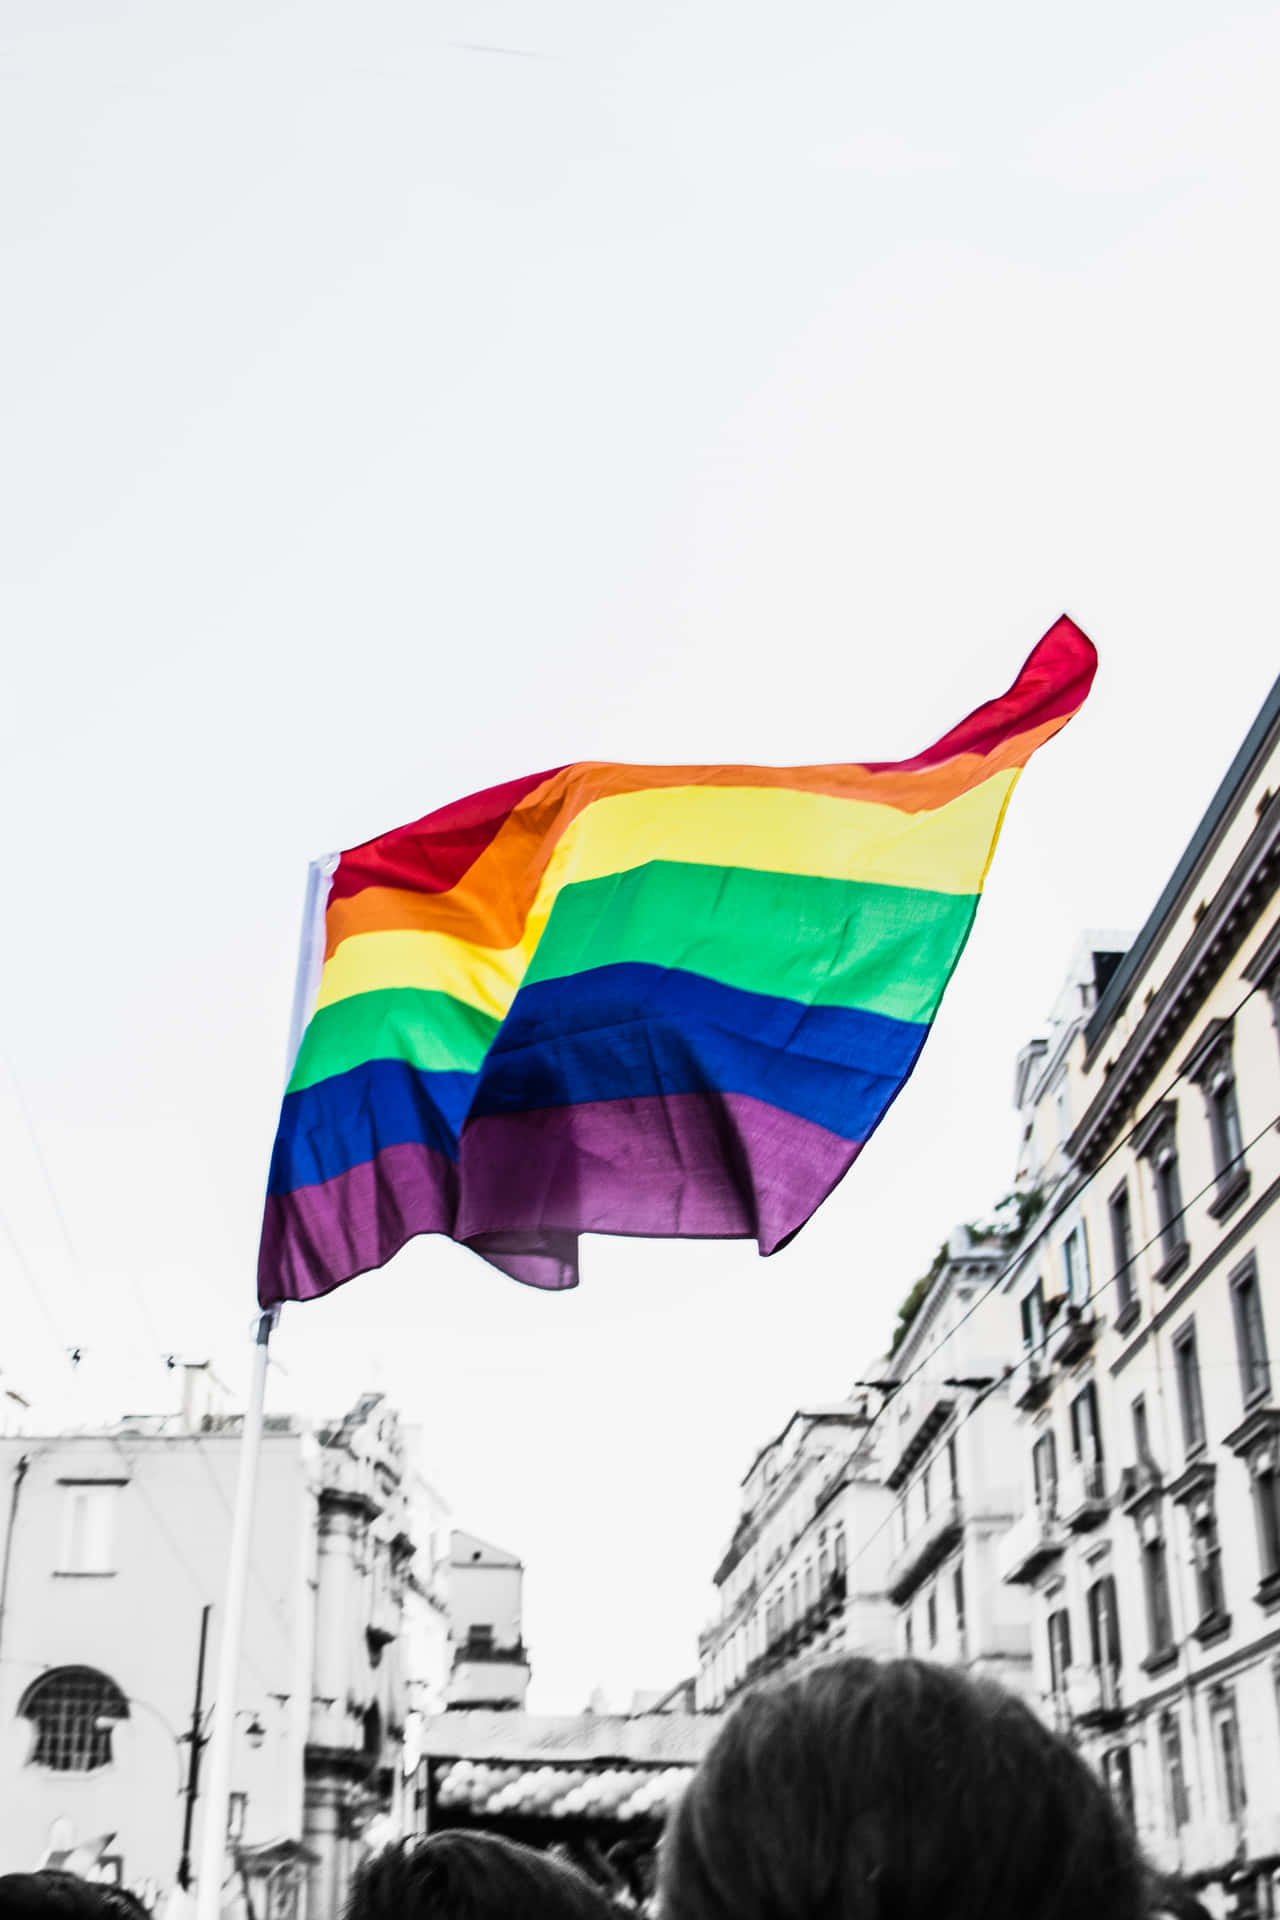 Sötfotografi Av Lgbt Pride Flagga 2018. Wallpaper